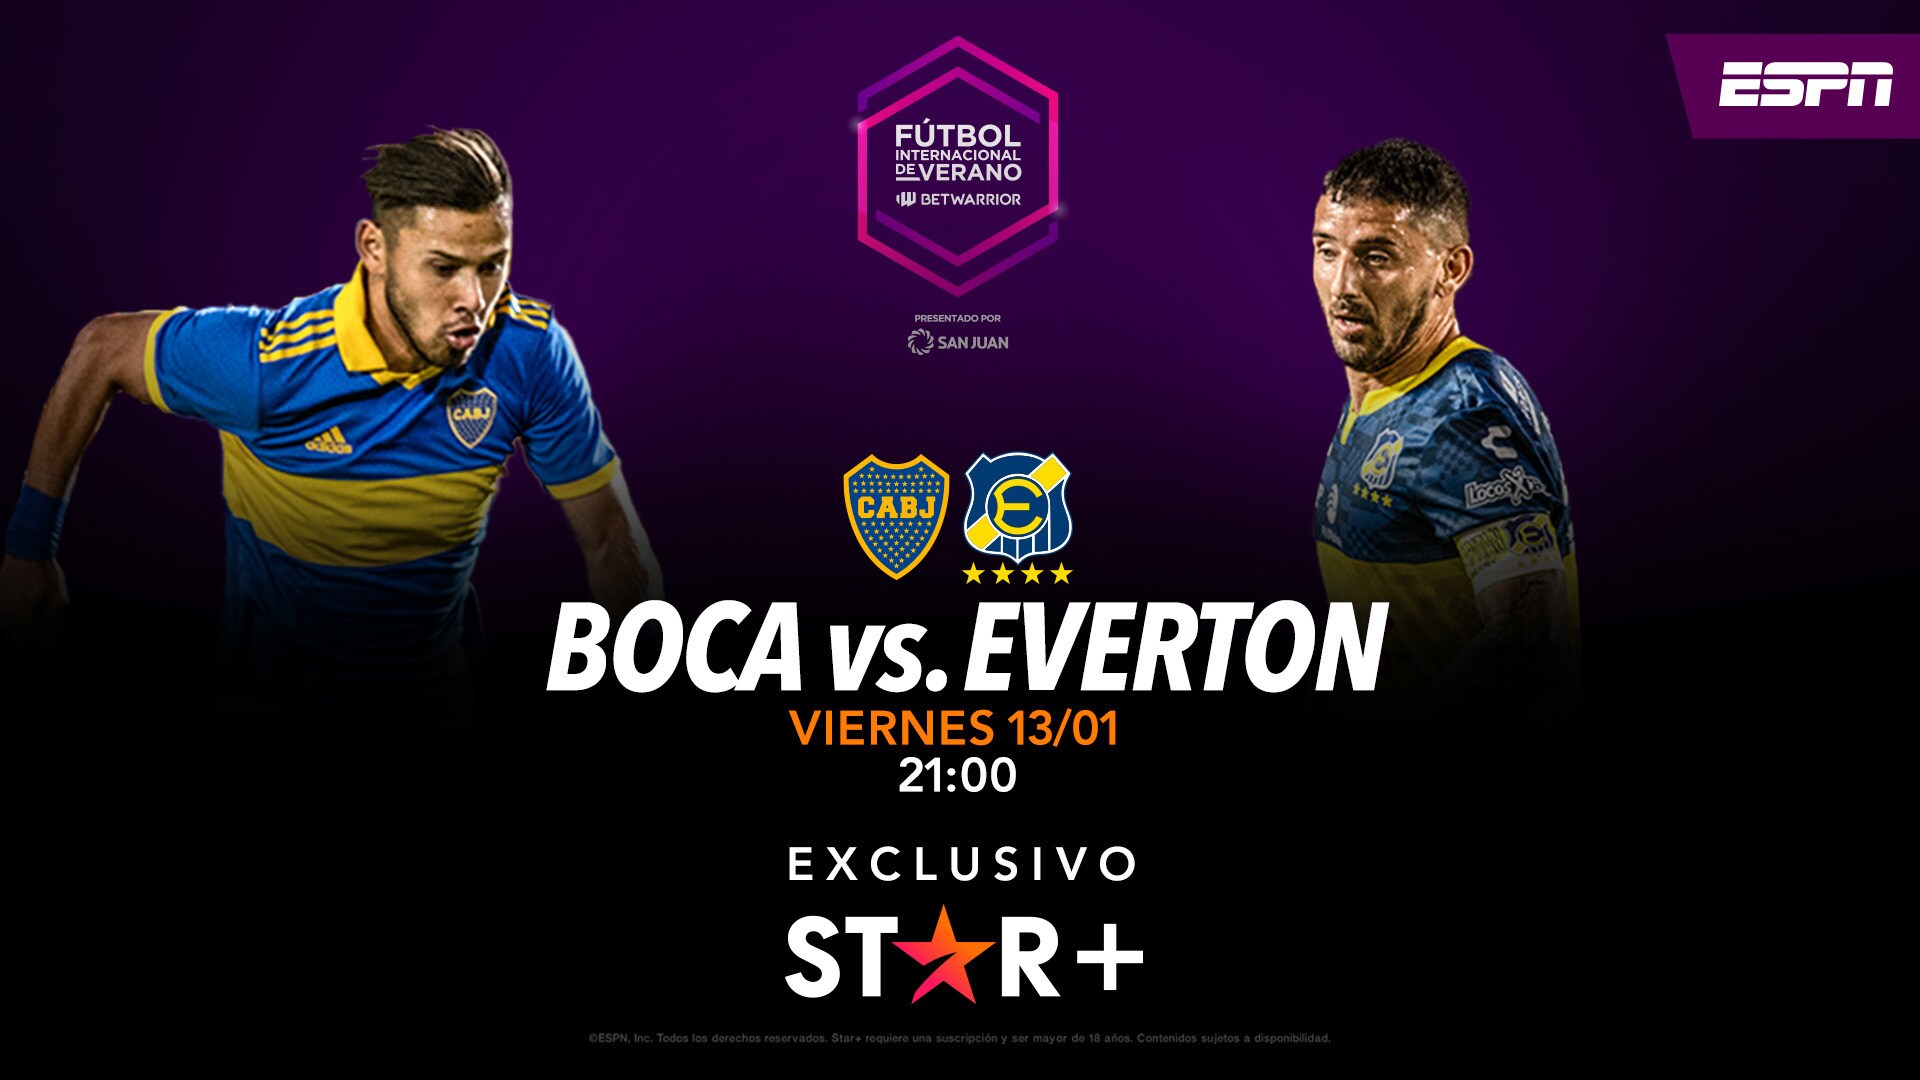 Boca vs. Everton en vivo: dónde ver online el partido del Fútbol Internacional de Verano